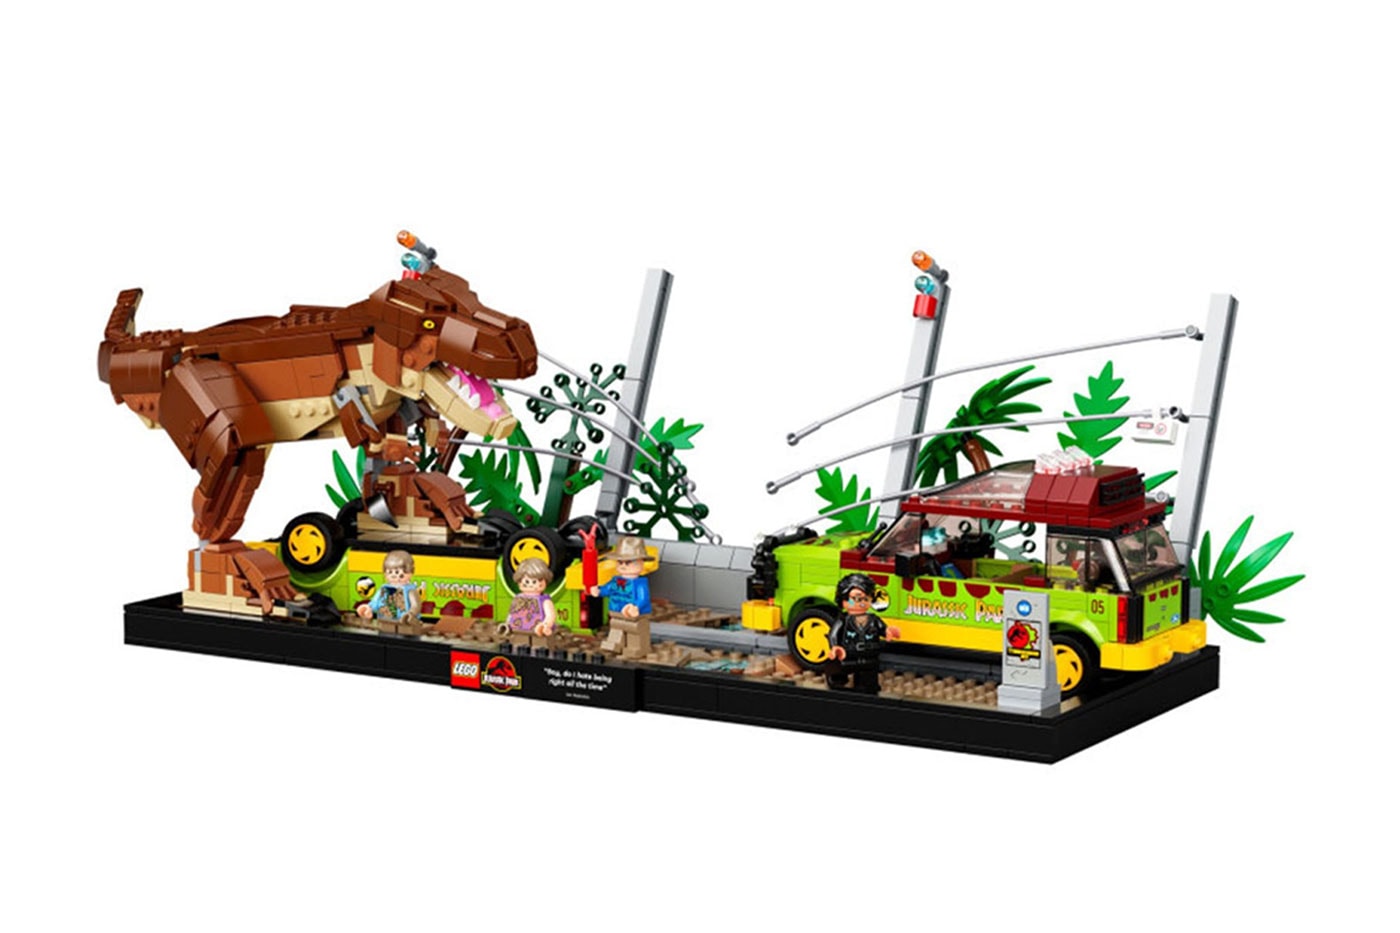 LEGO Jurassic World ganha novo trailer e data de lançamento